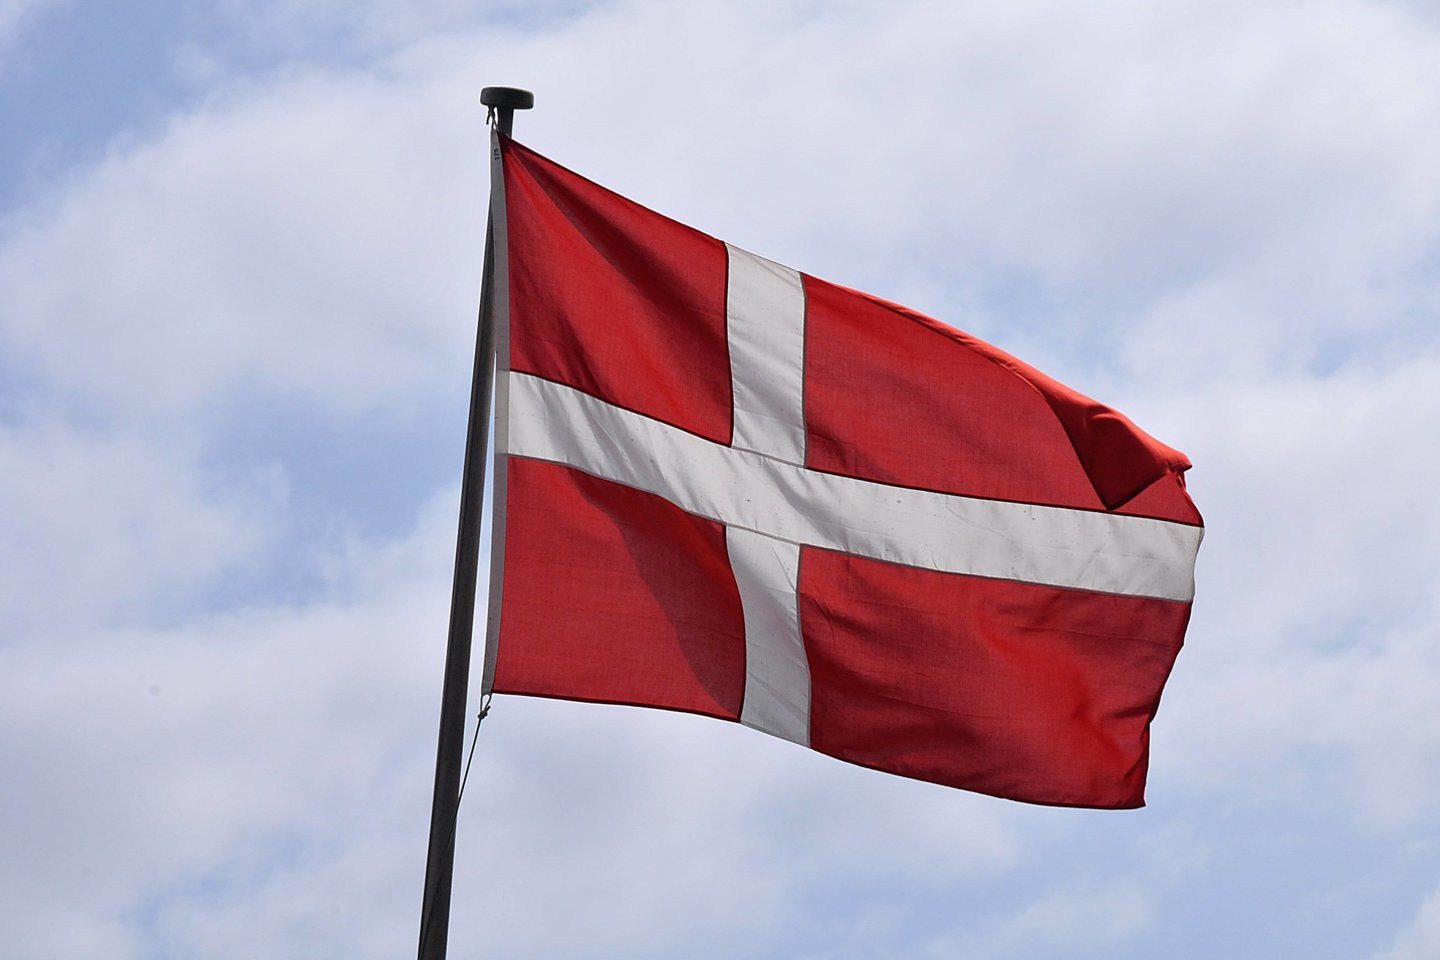  Danija sustabdė užsienio žvalgybos agentūros vadovo ir dar dviejų pareigūnų įgaliojimus.  <br> imago/Scanpix nuotr.